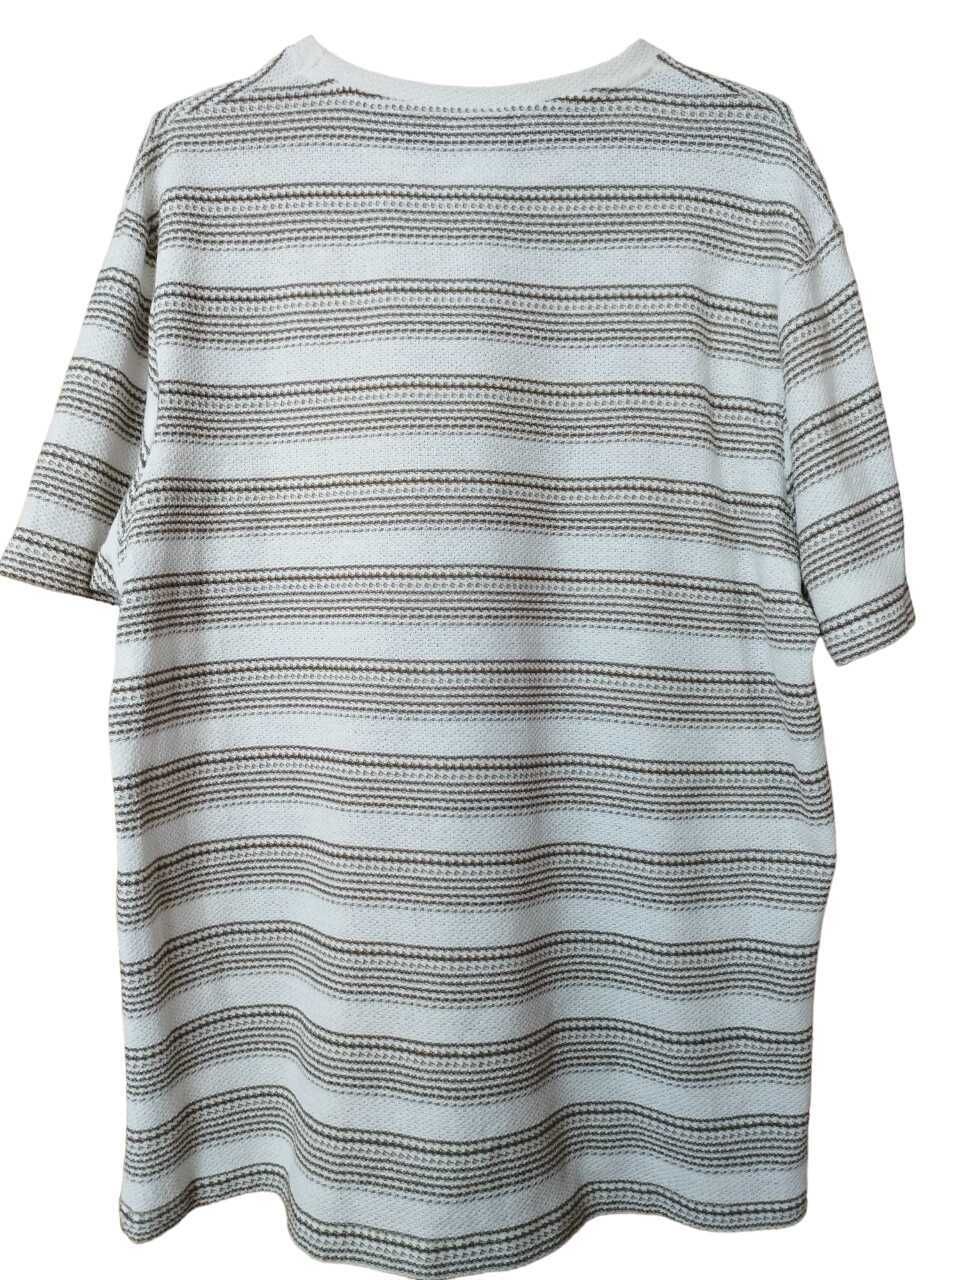 Мъжка елегантна тениска Zara, Бежова, XL